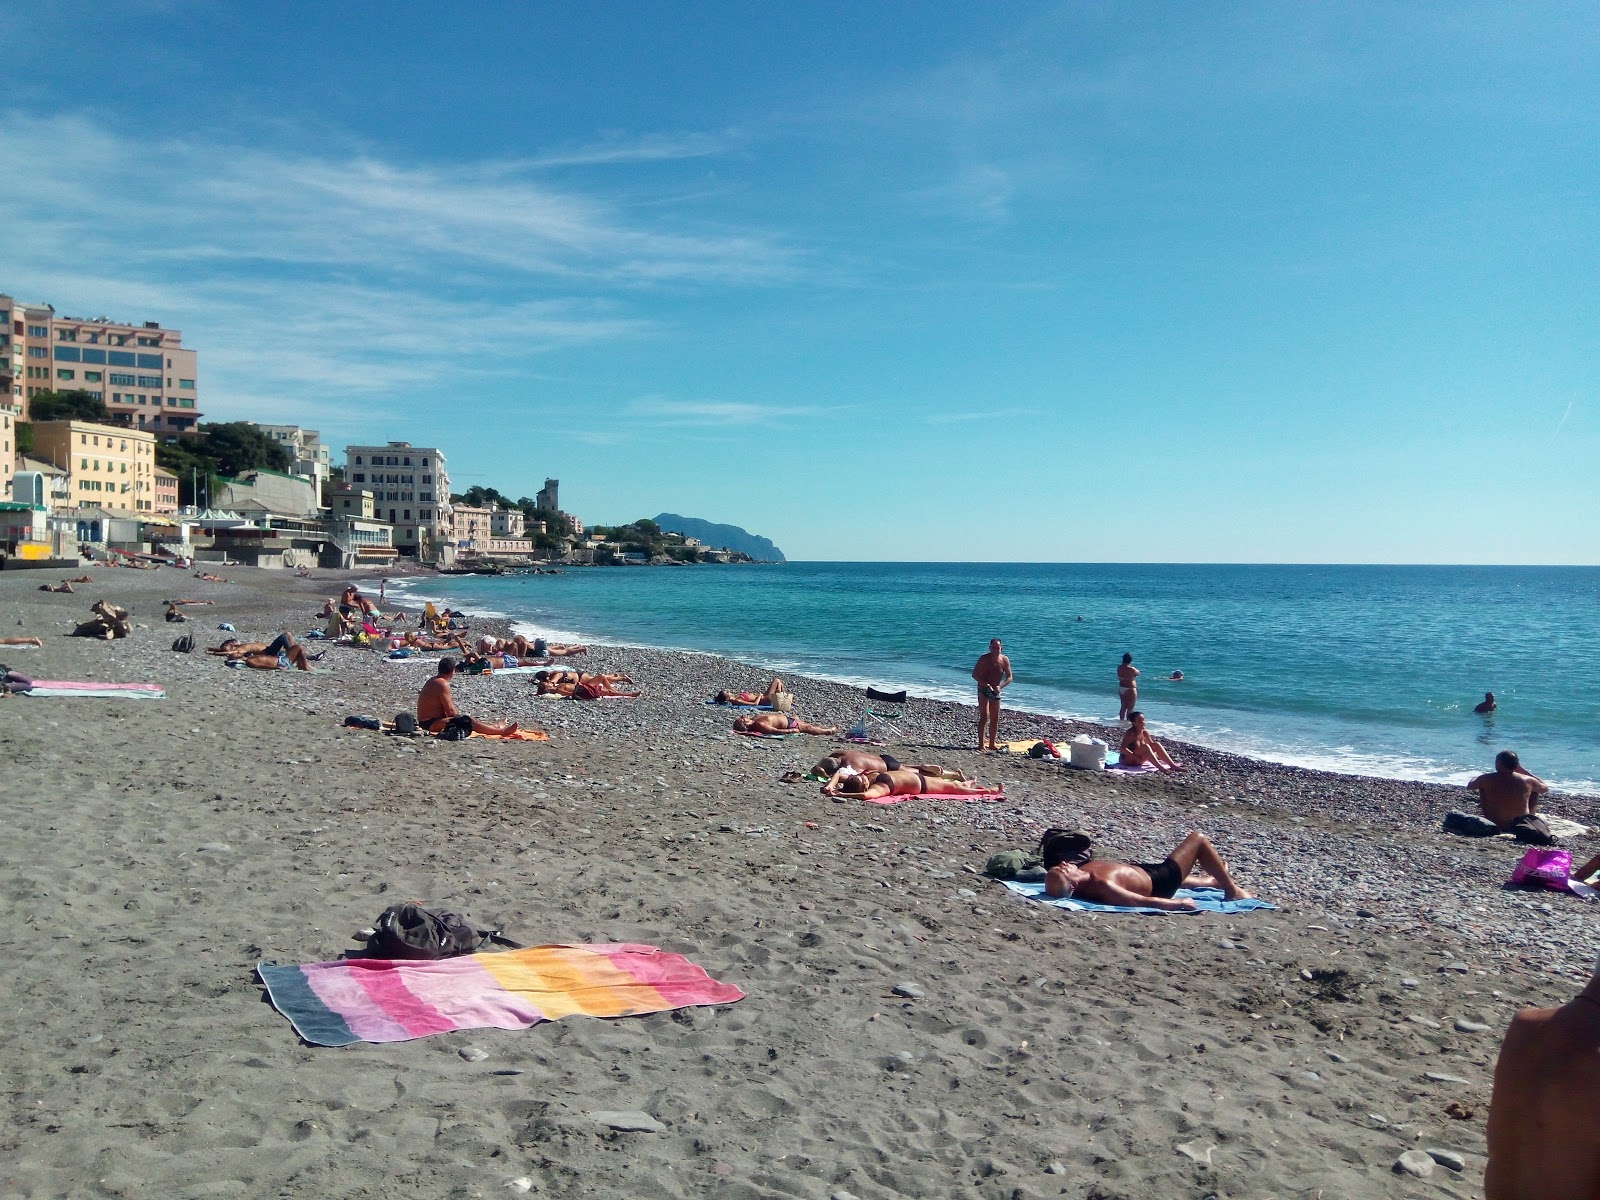 Foto van Spiaggia Sturla met gemiddeld niveau van netheid